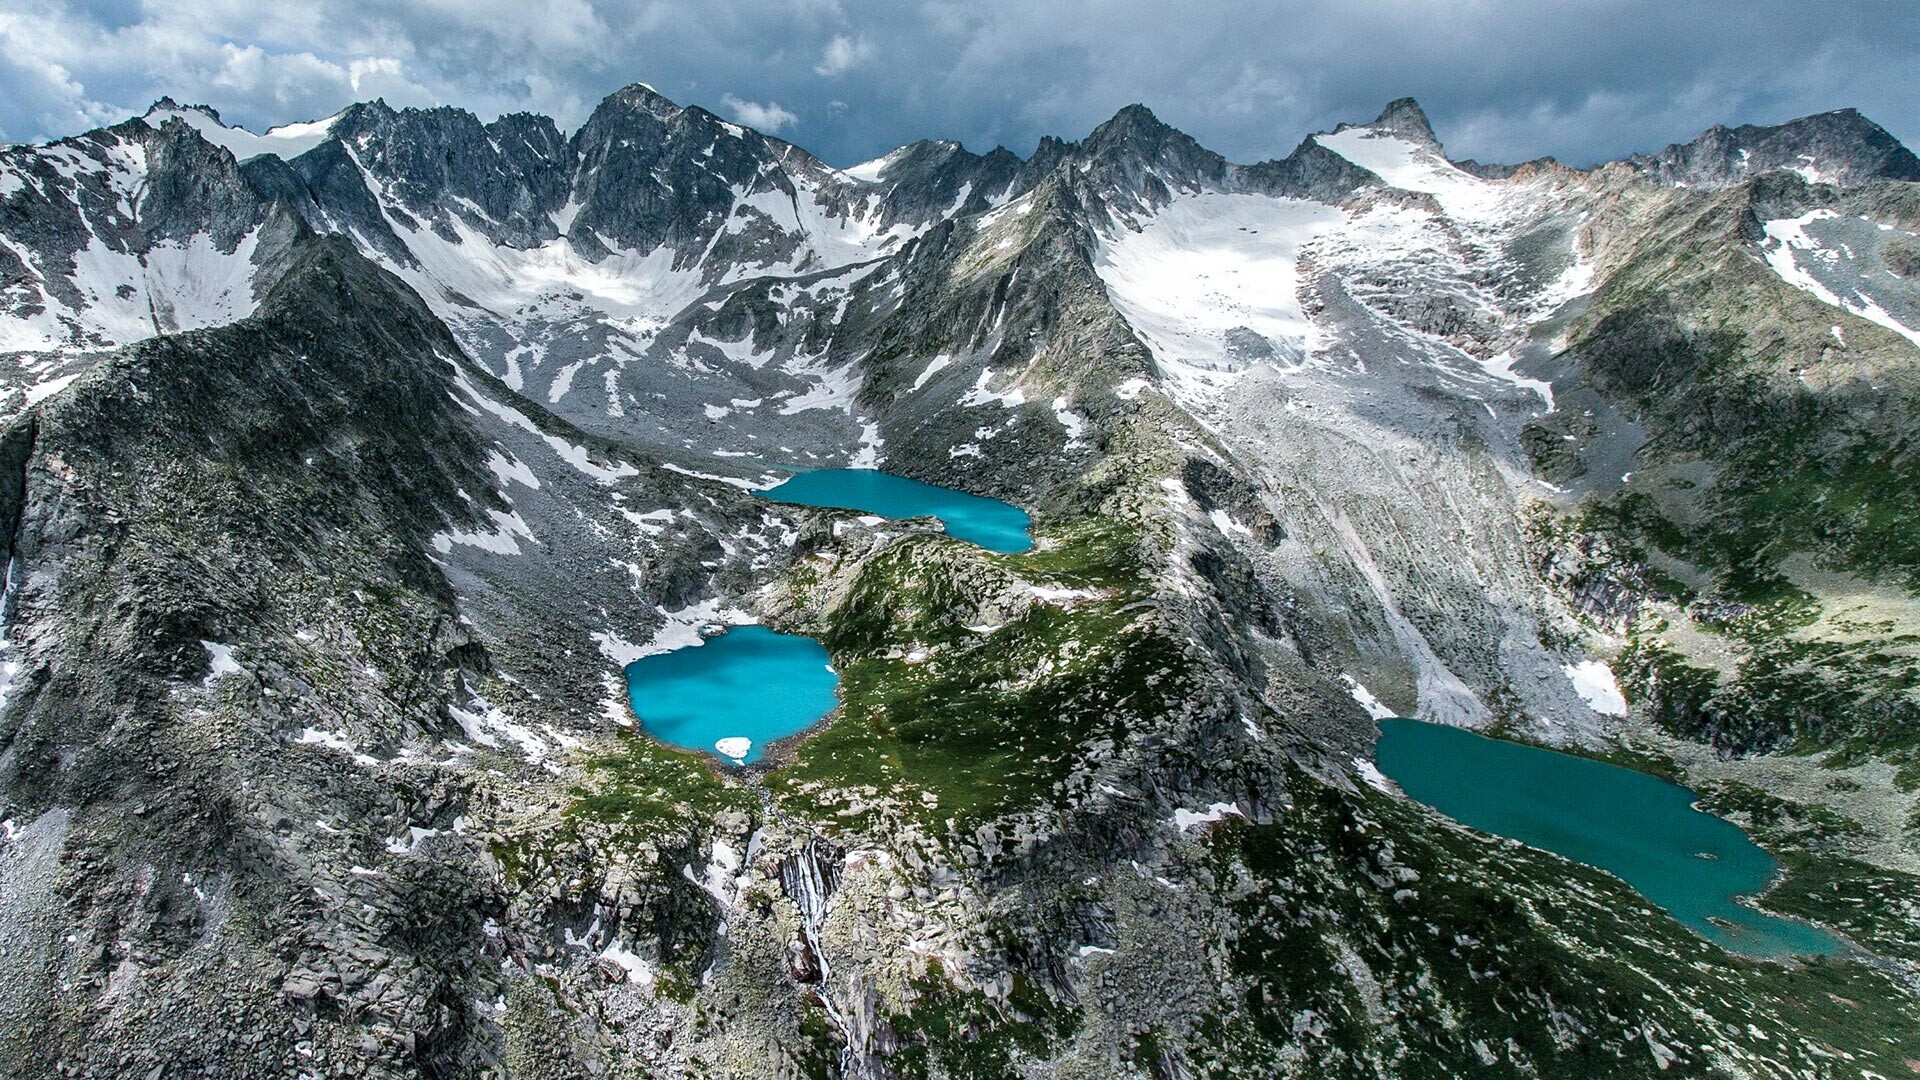 Република Алтај. Мултинските езера се група езера на северната падина на Катунскиот гребен на Алтајските планини.

